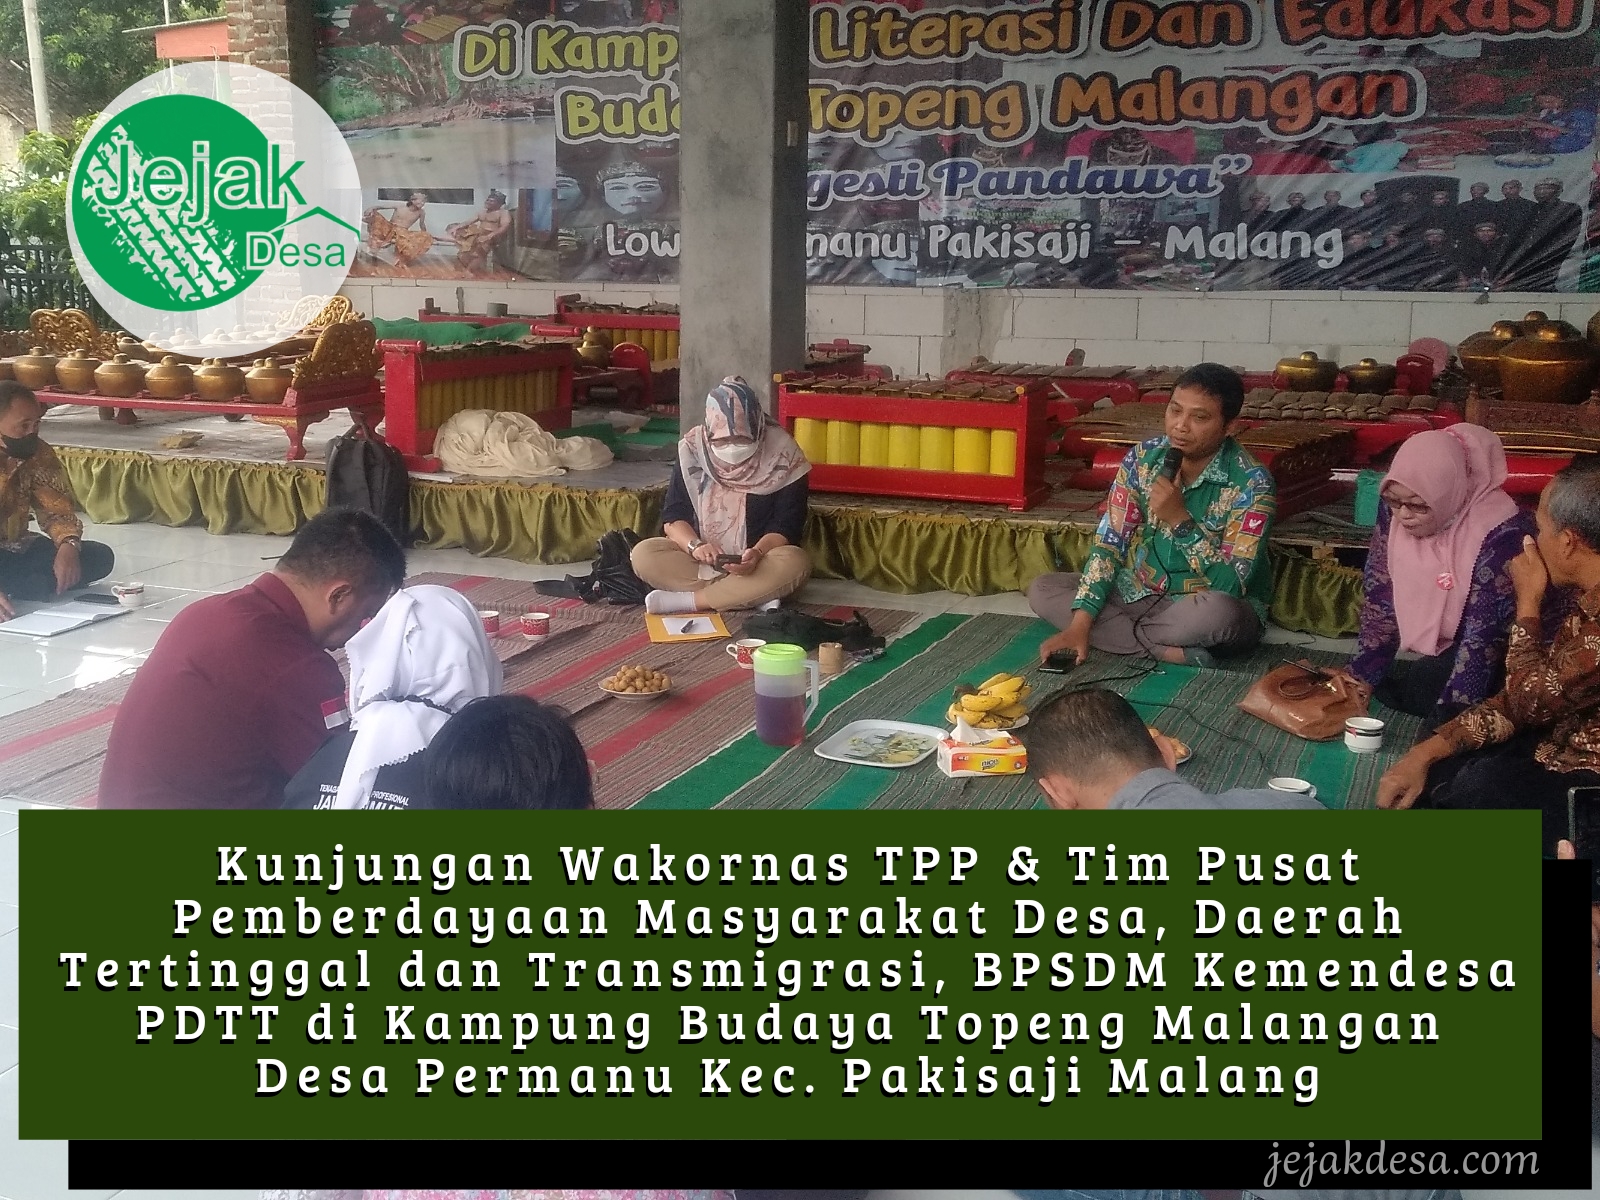 Dikunjungi Kementerian Desa, Dusun Lowok Desa Permanu Pakisaji Digadang Sebagai Sentra Topeng Malangan